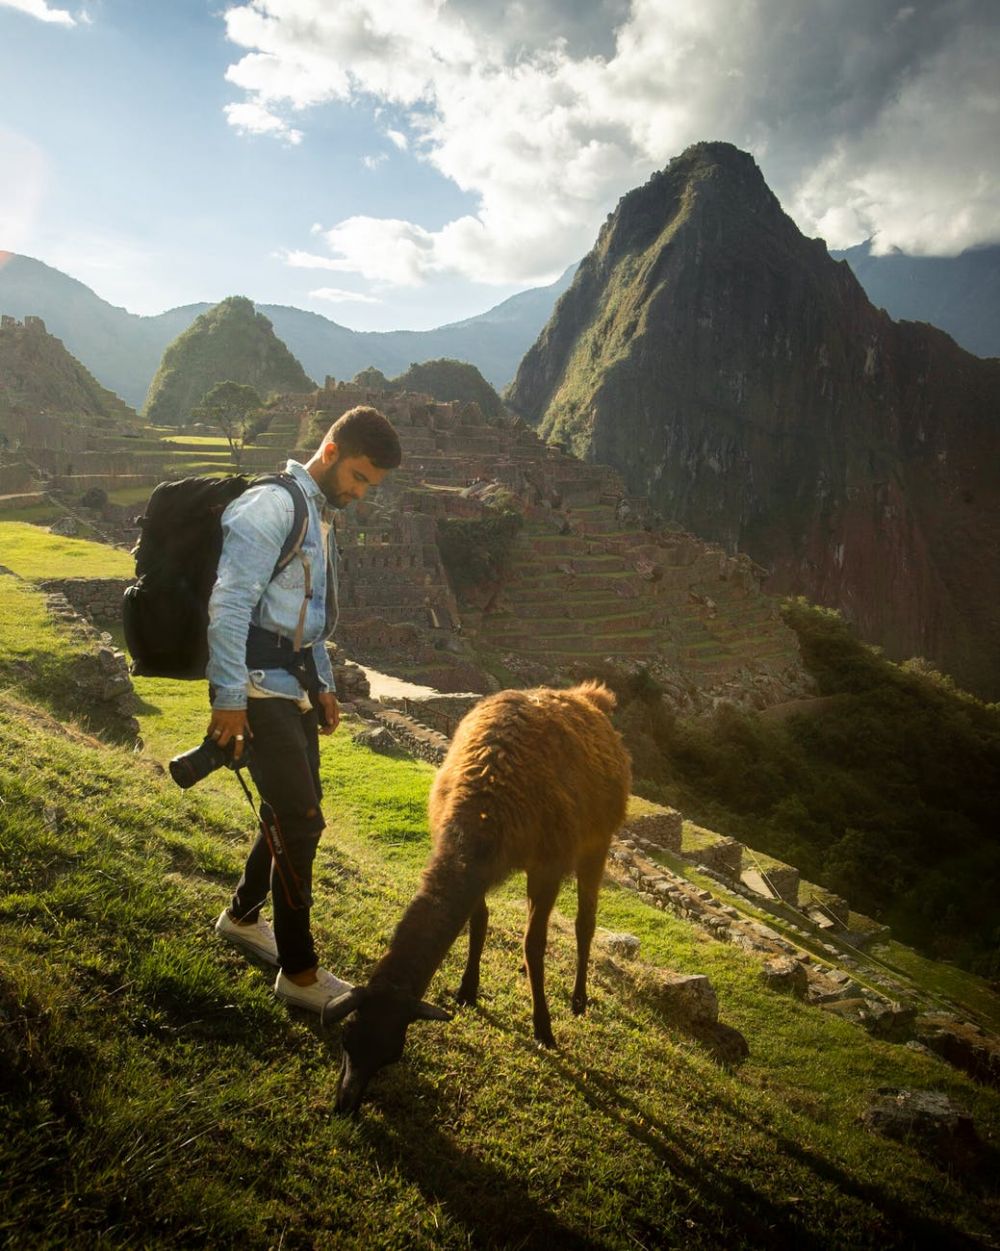 Turismo comunitario: ¿Qué es y cómo se aprovecha en Perú?